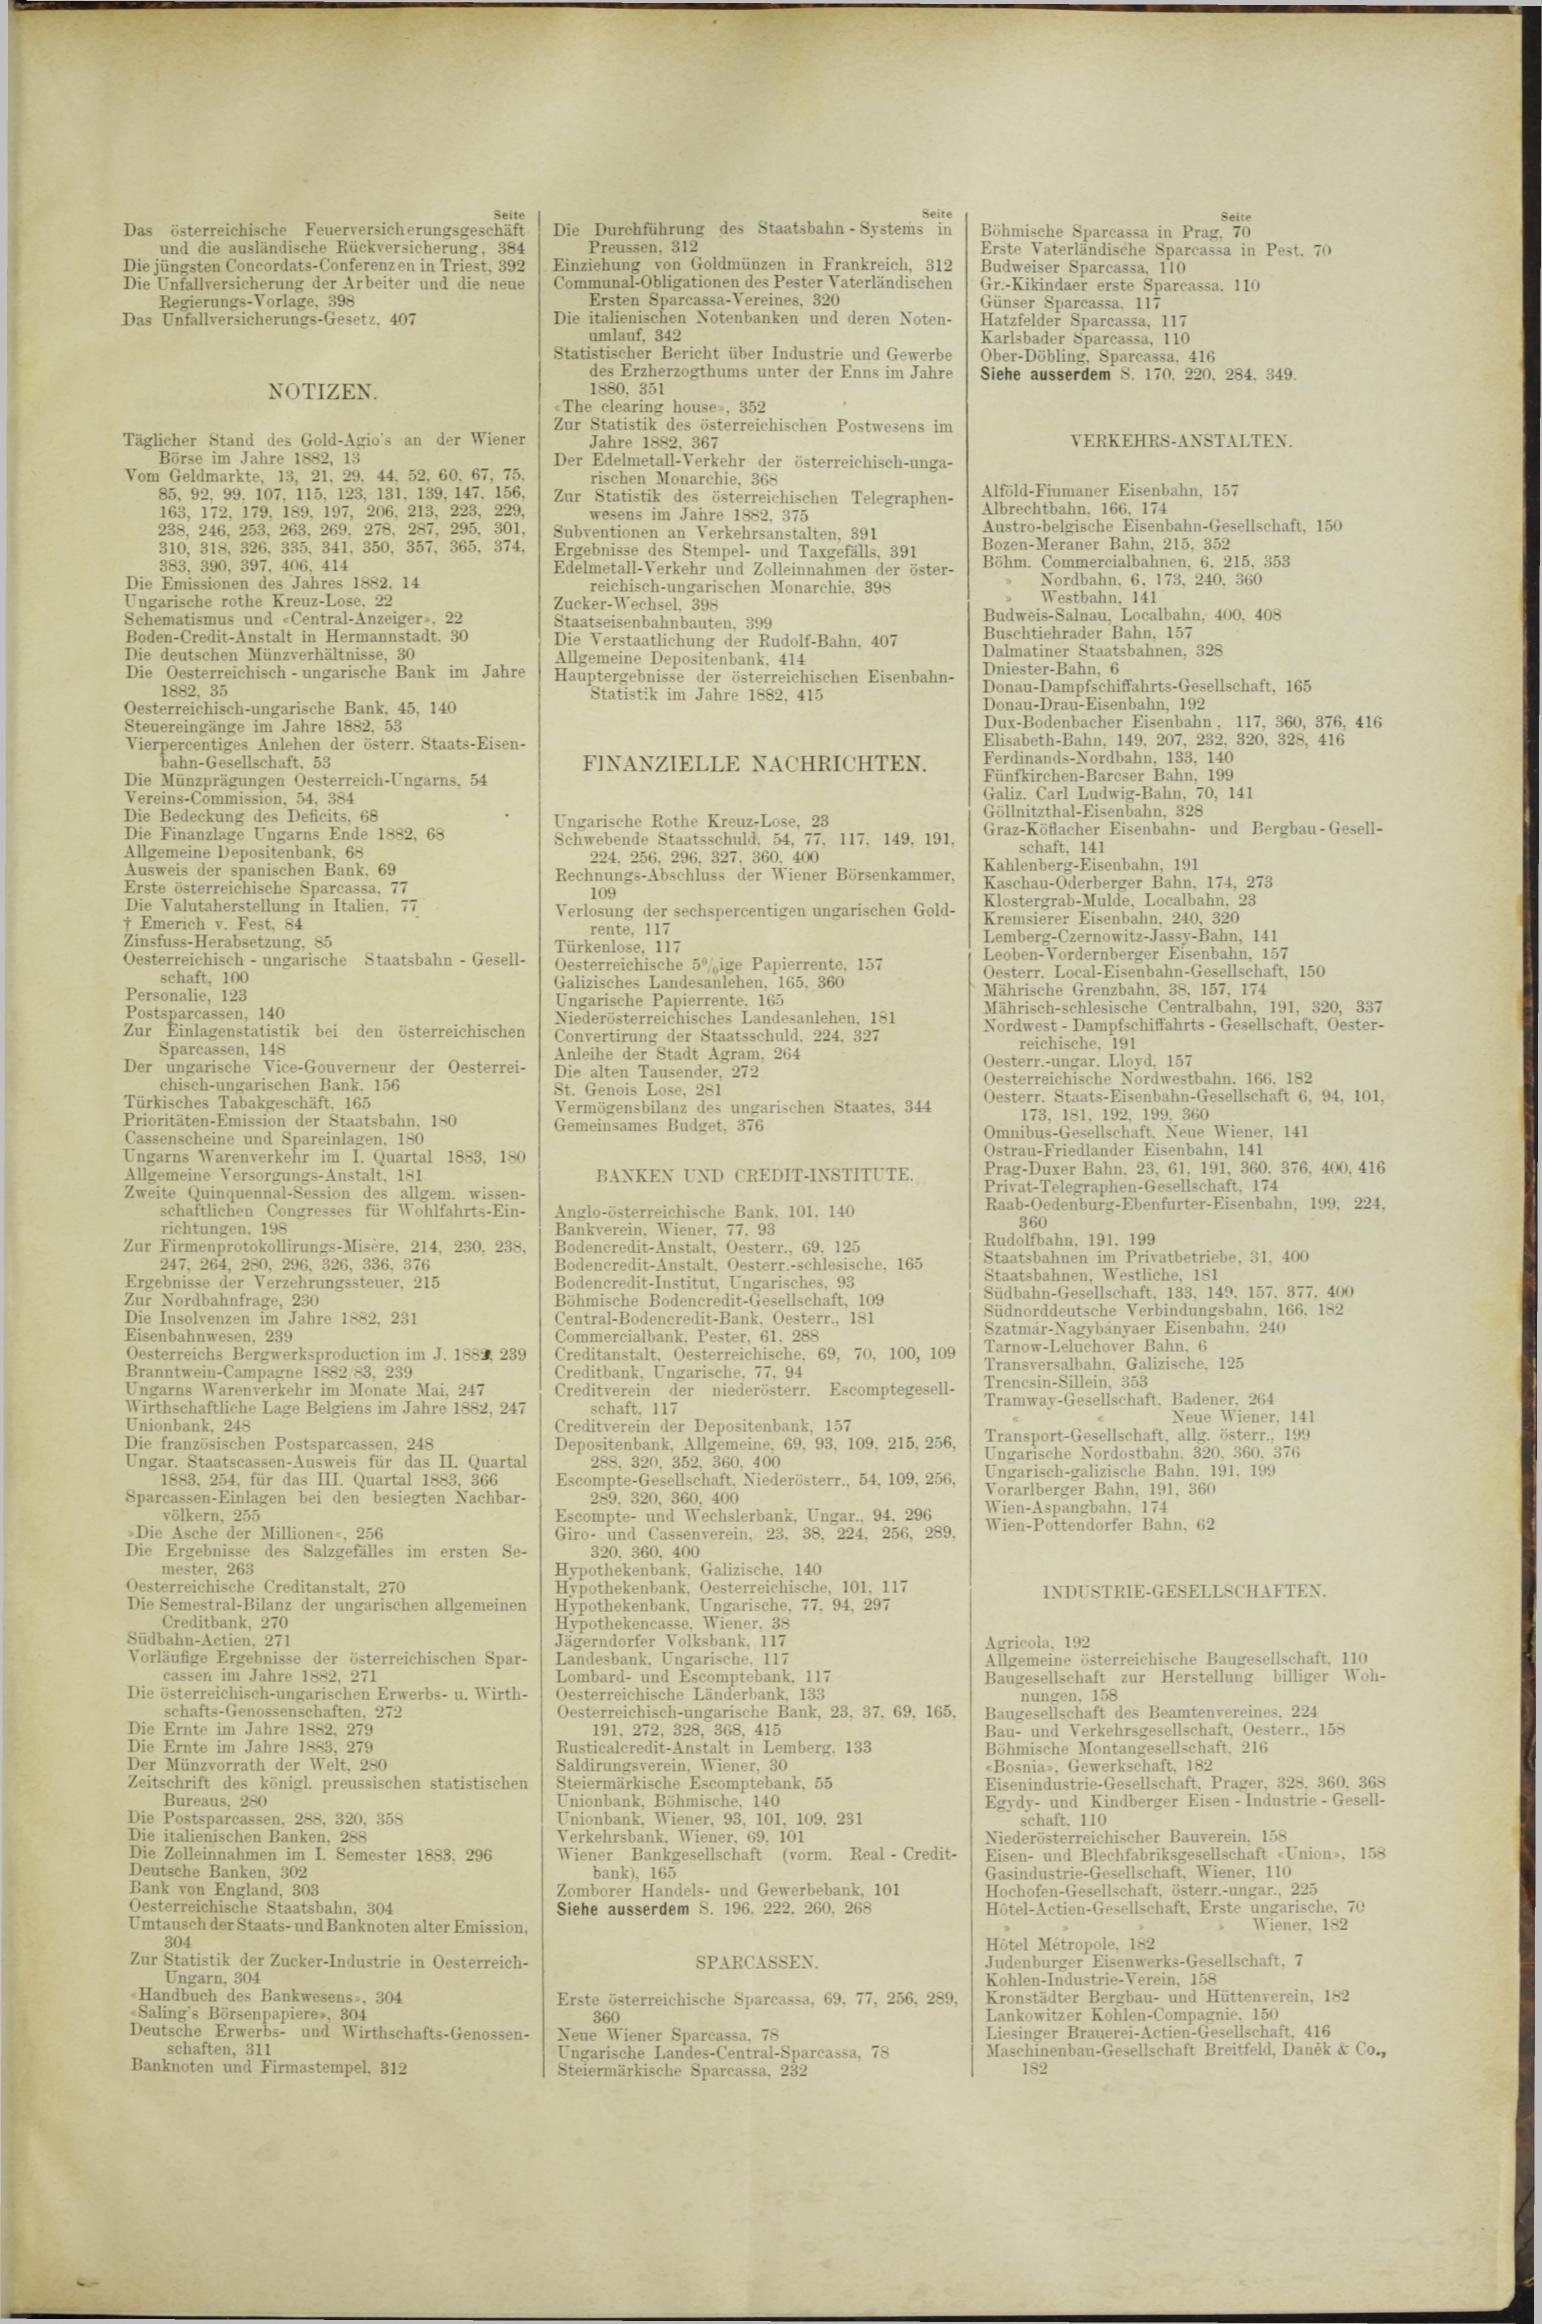 Der Tresor 23.08.1883 - Seite 11